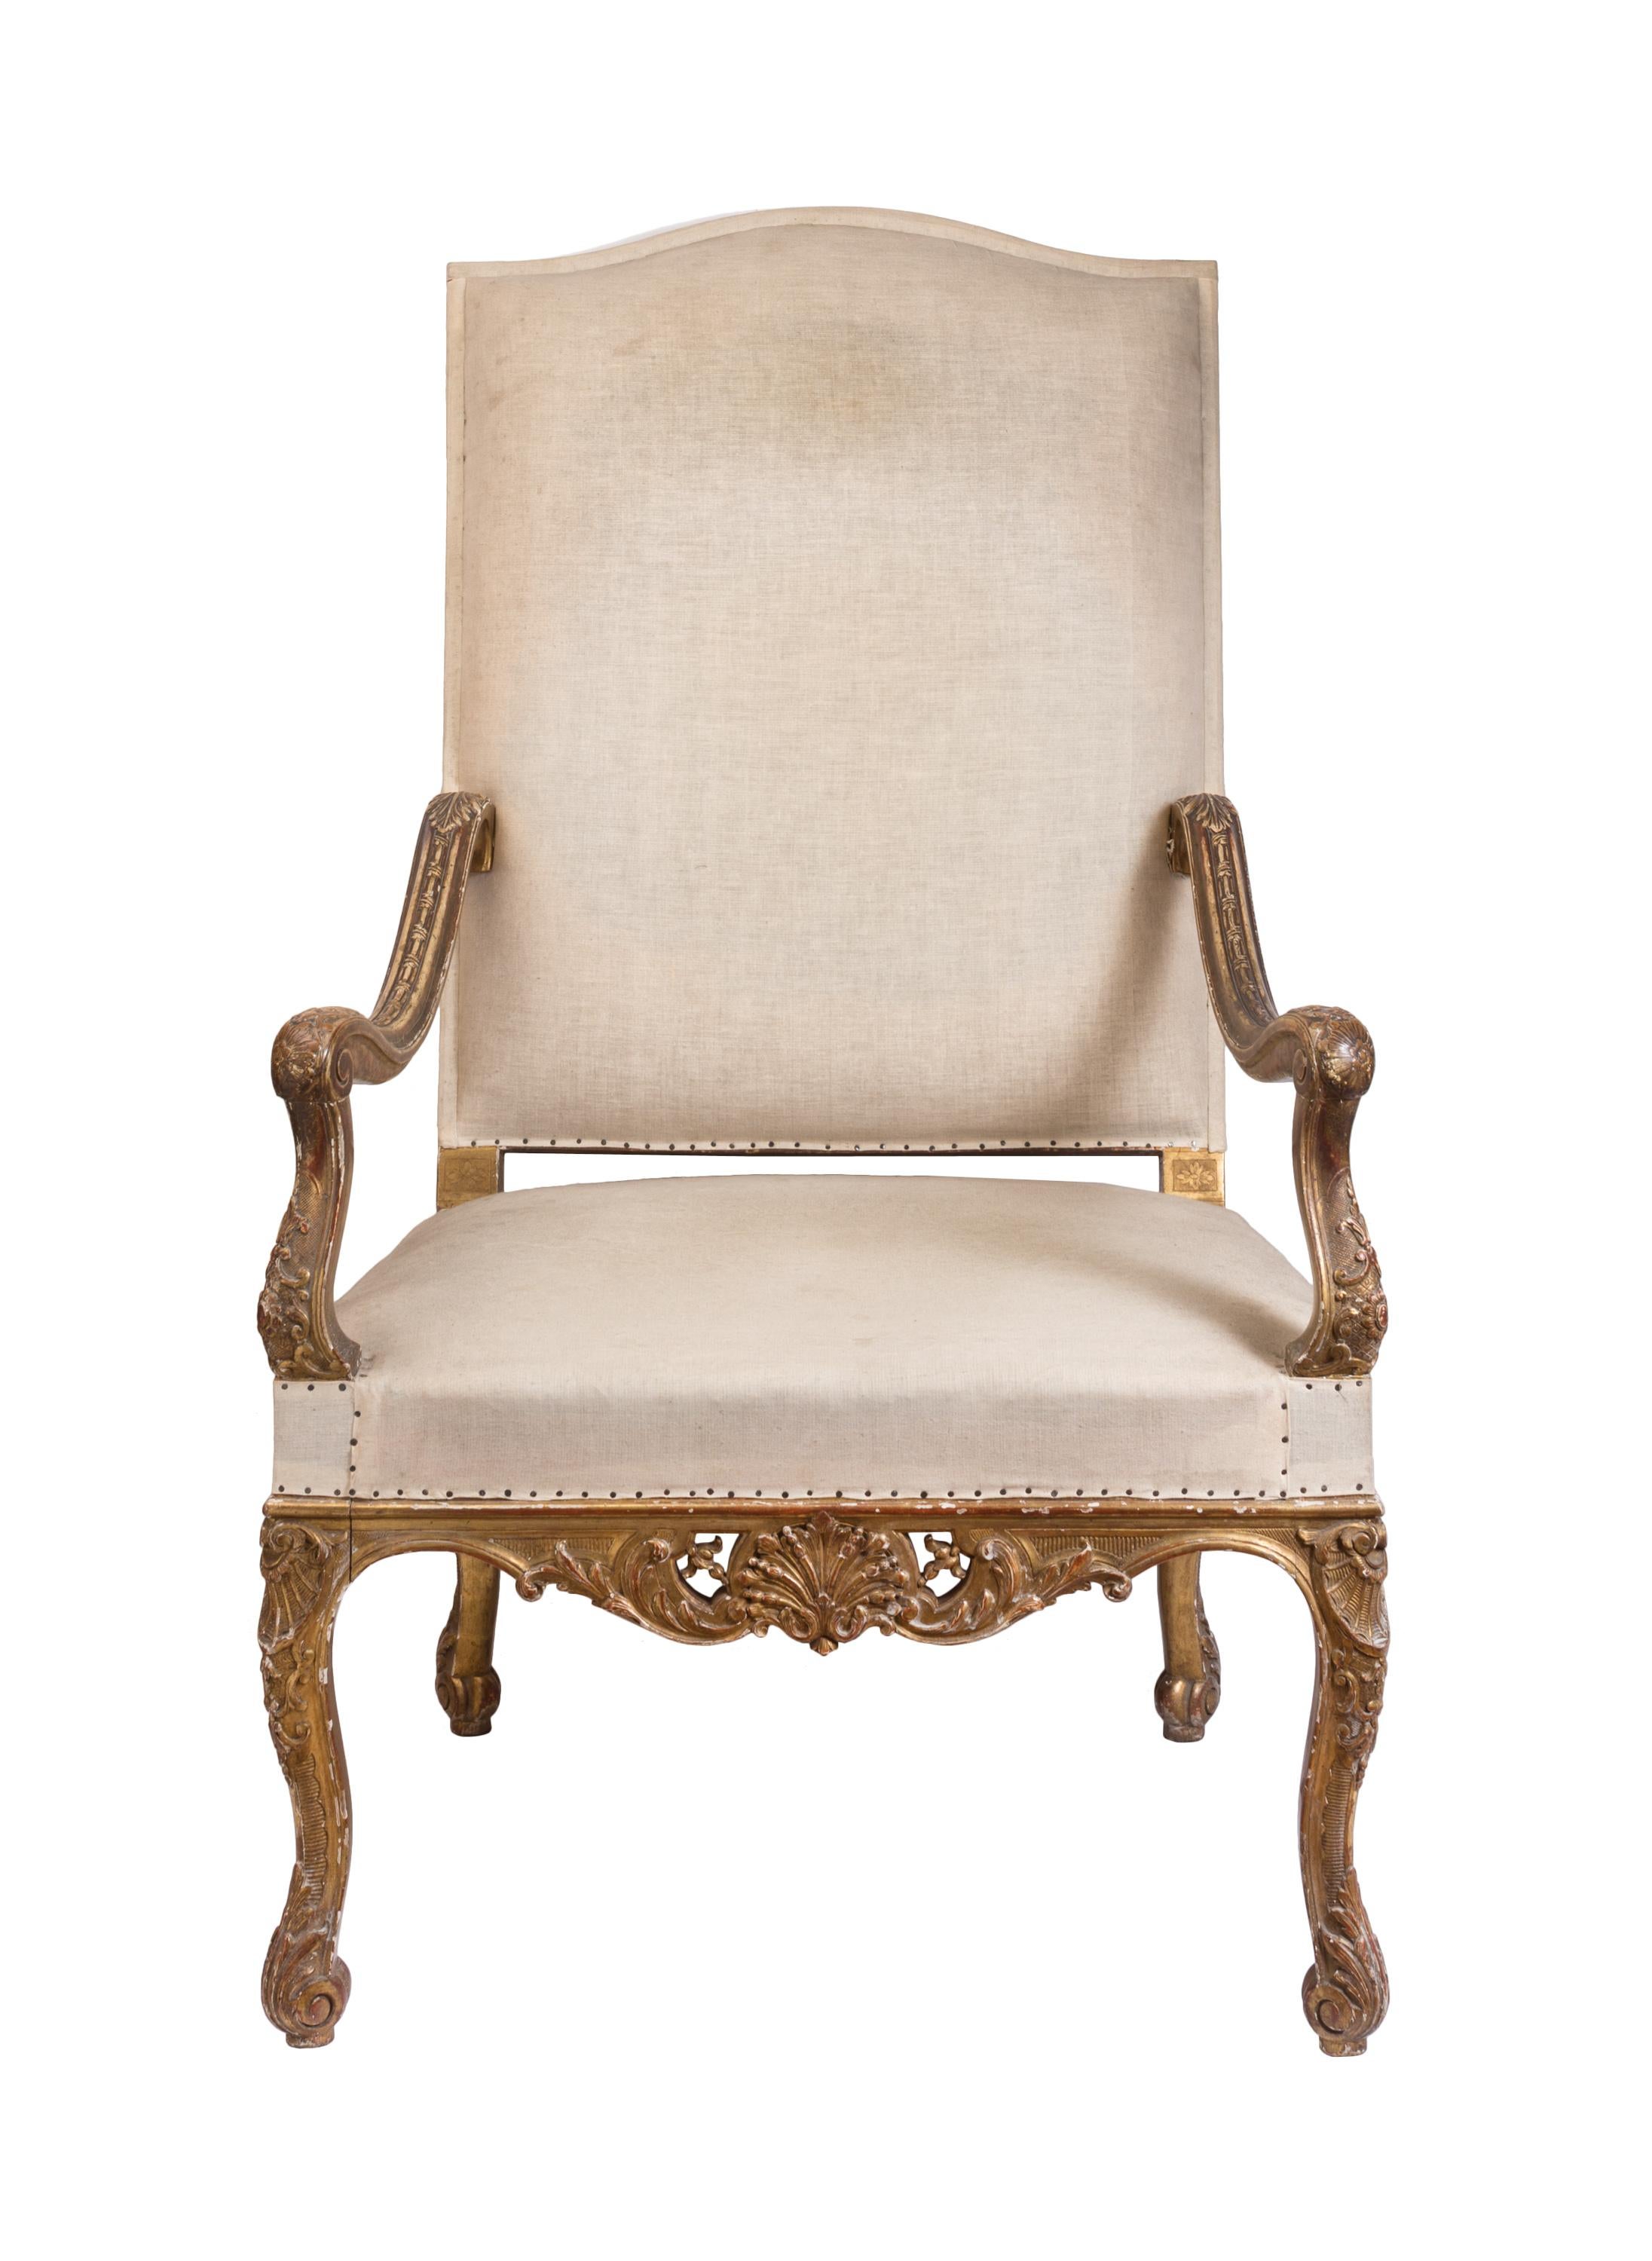 Ce fauteuil royal à dossier haut, semblable à un trône, de style Louis XIV du XIXe siècle, nous rappelle l'époque où la taille du fauteuil d'une personne reflétait son statut social - plus il était grand et imposant, plus vous étiez haut placé.